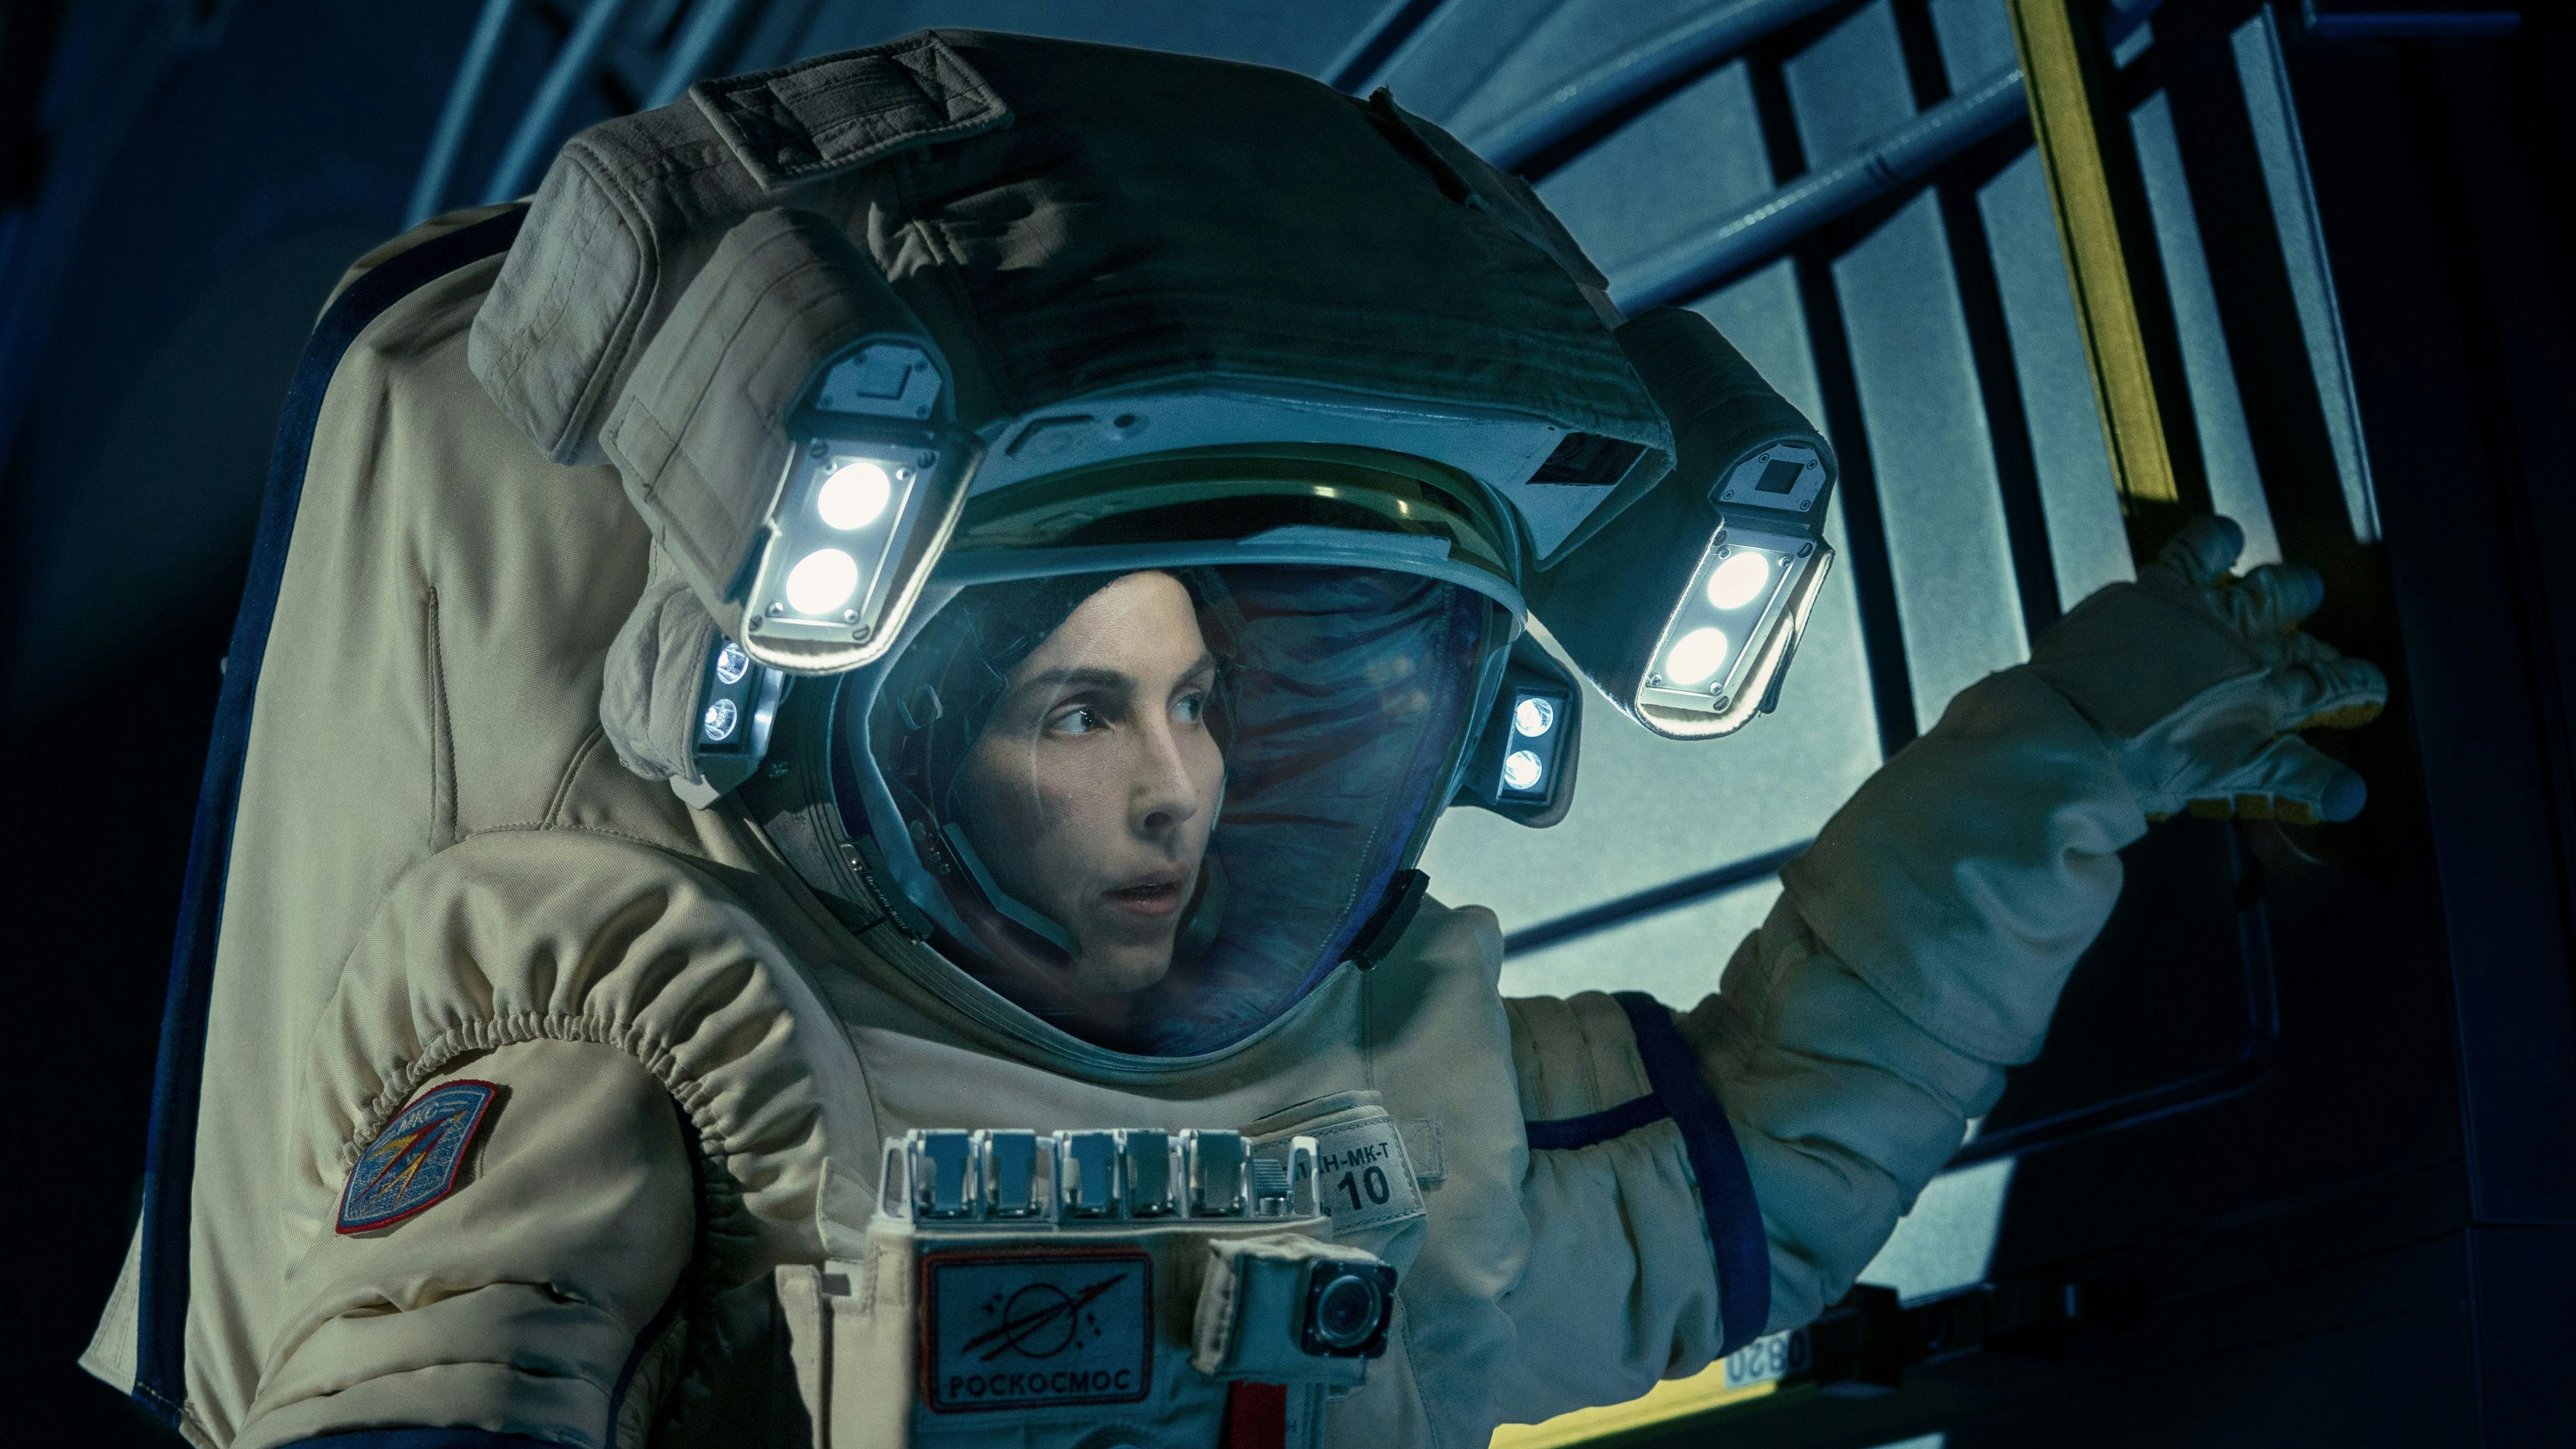 Nach der Weltraummission ist nichts mehrt so wie vor der Weltraummission: Noomi Rapace als Astronautin mit Problemen in "Constellation".